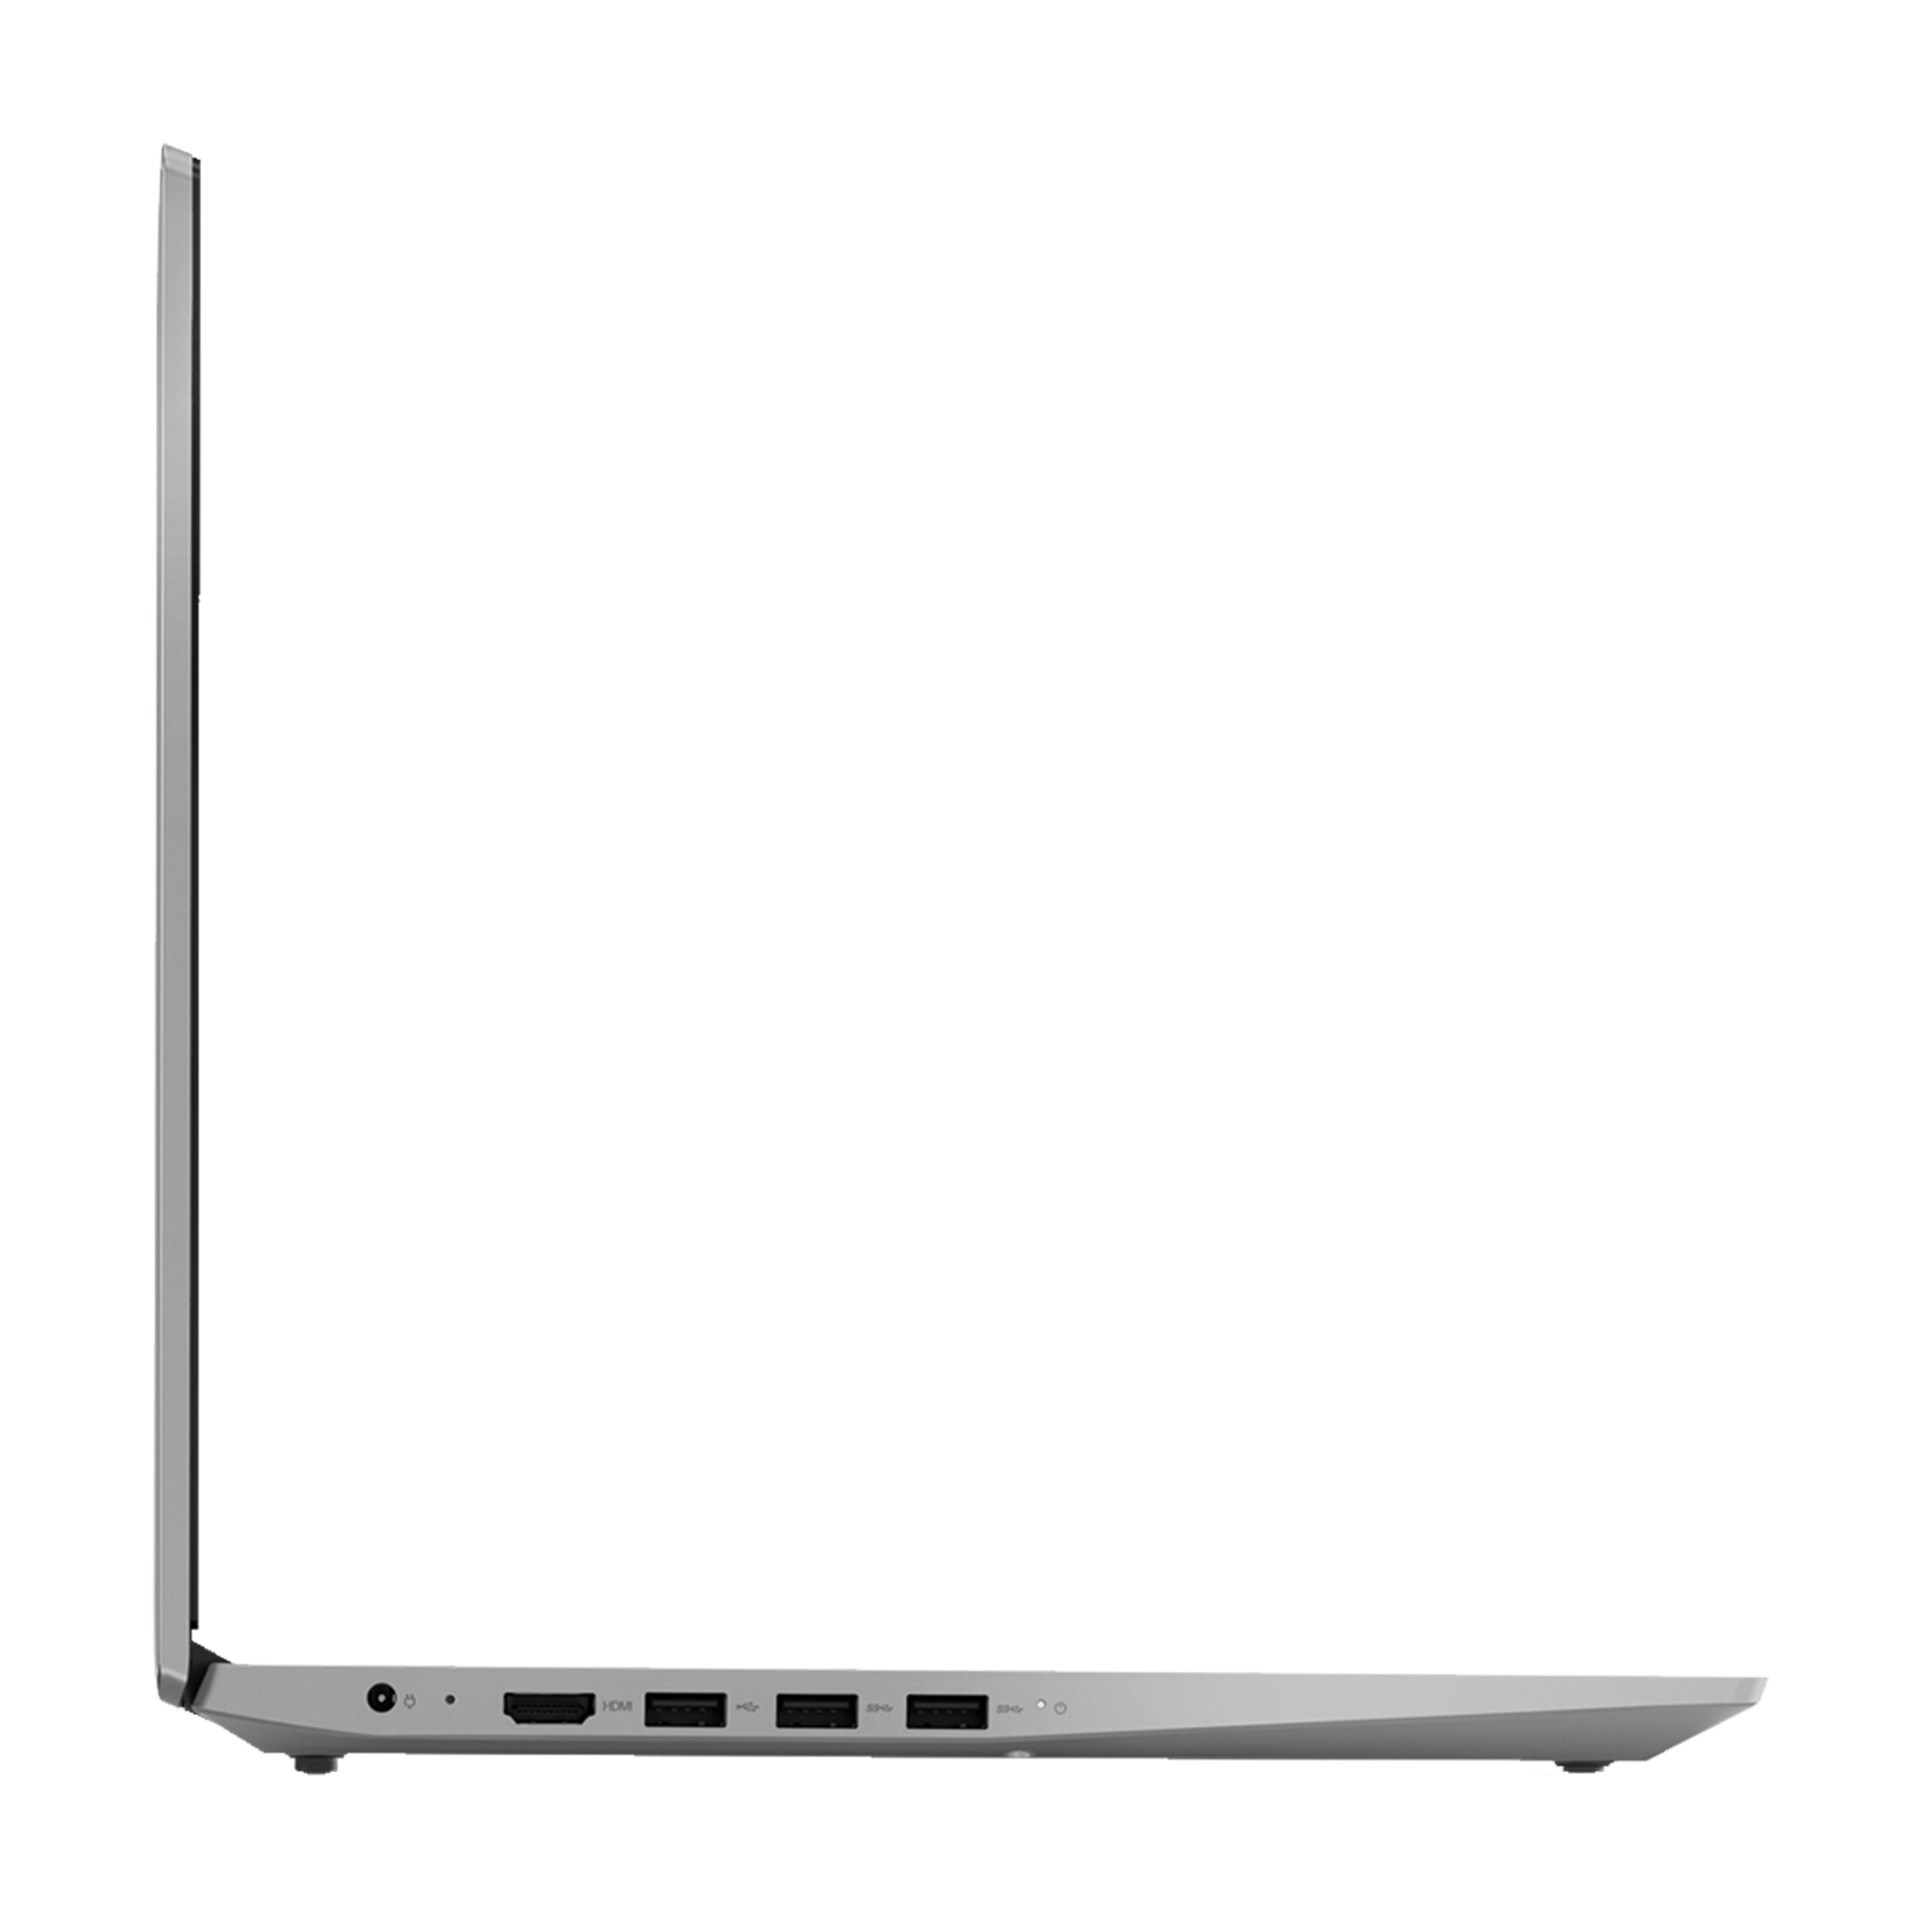 Laptop Lenovo IdeaPad S145-15IWL (i5 1035G1/4GB RAM/256GB SSD/15.6 inch FHD/Win 10/Grey) - 81W8001YVN